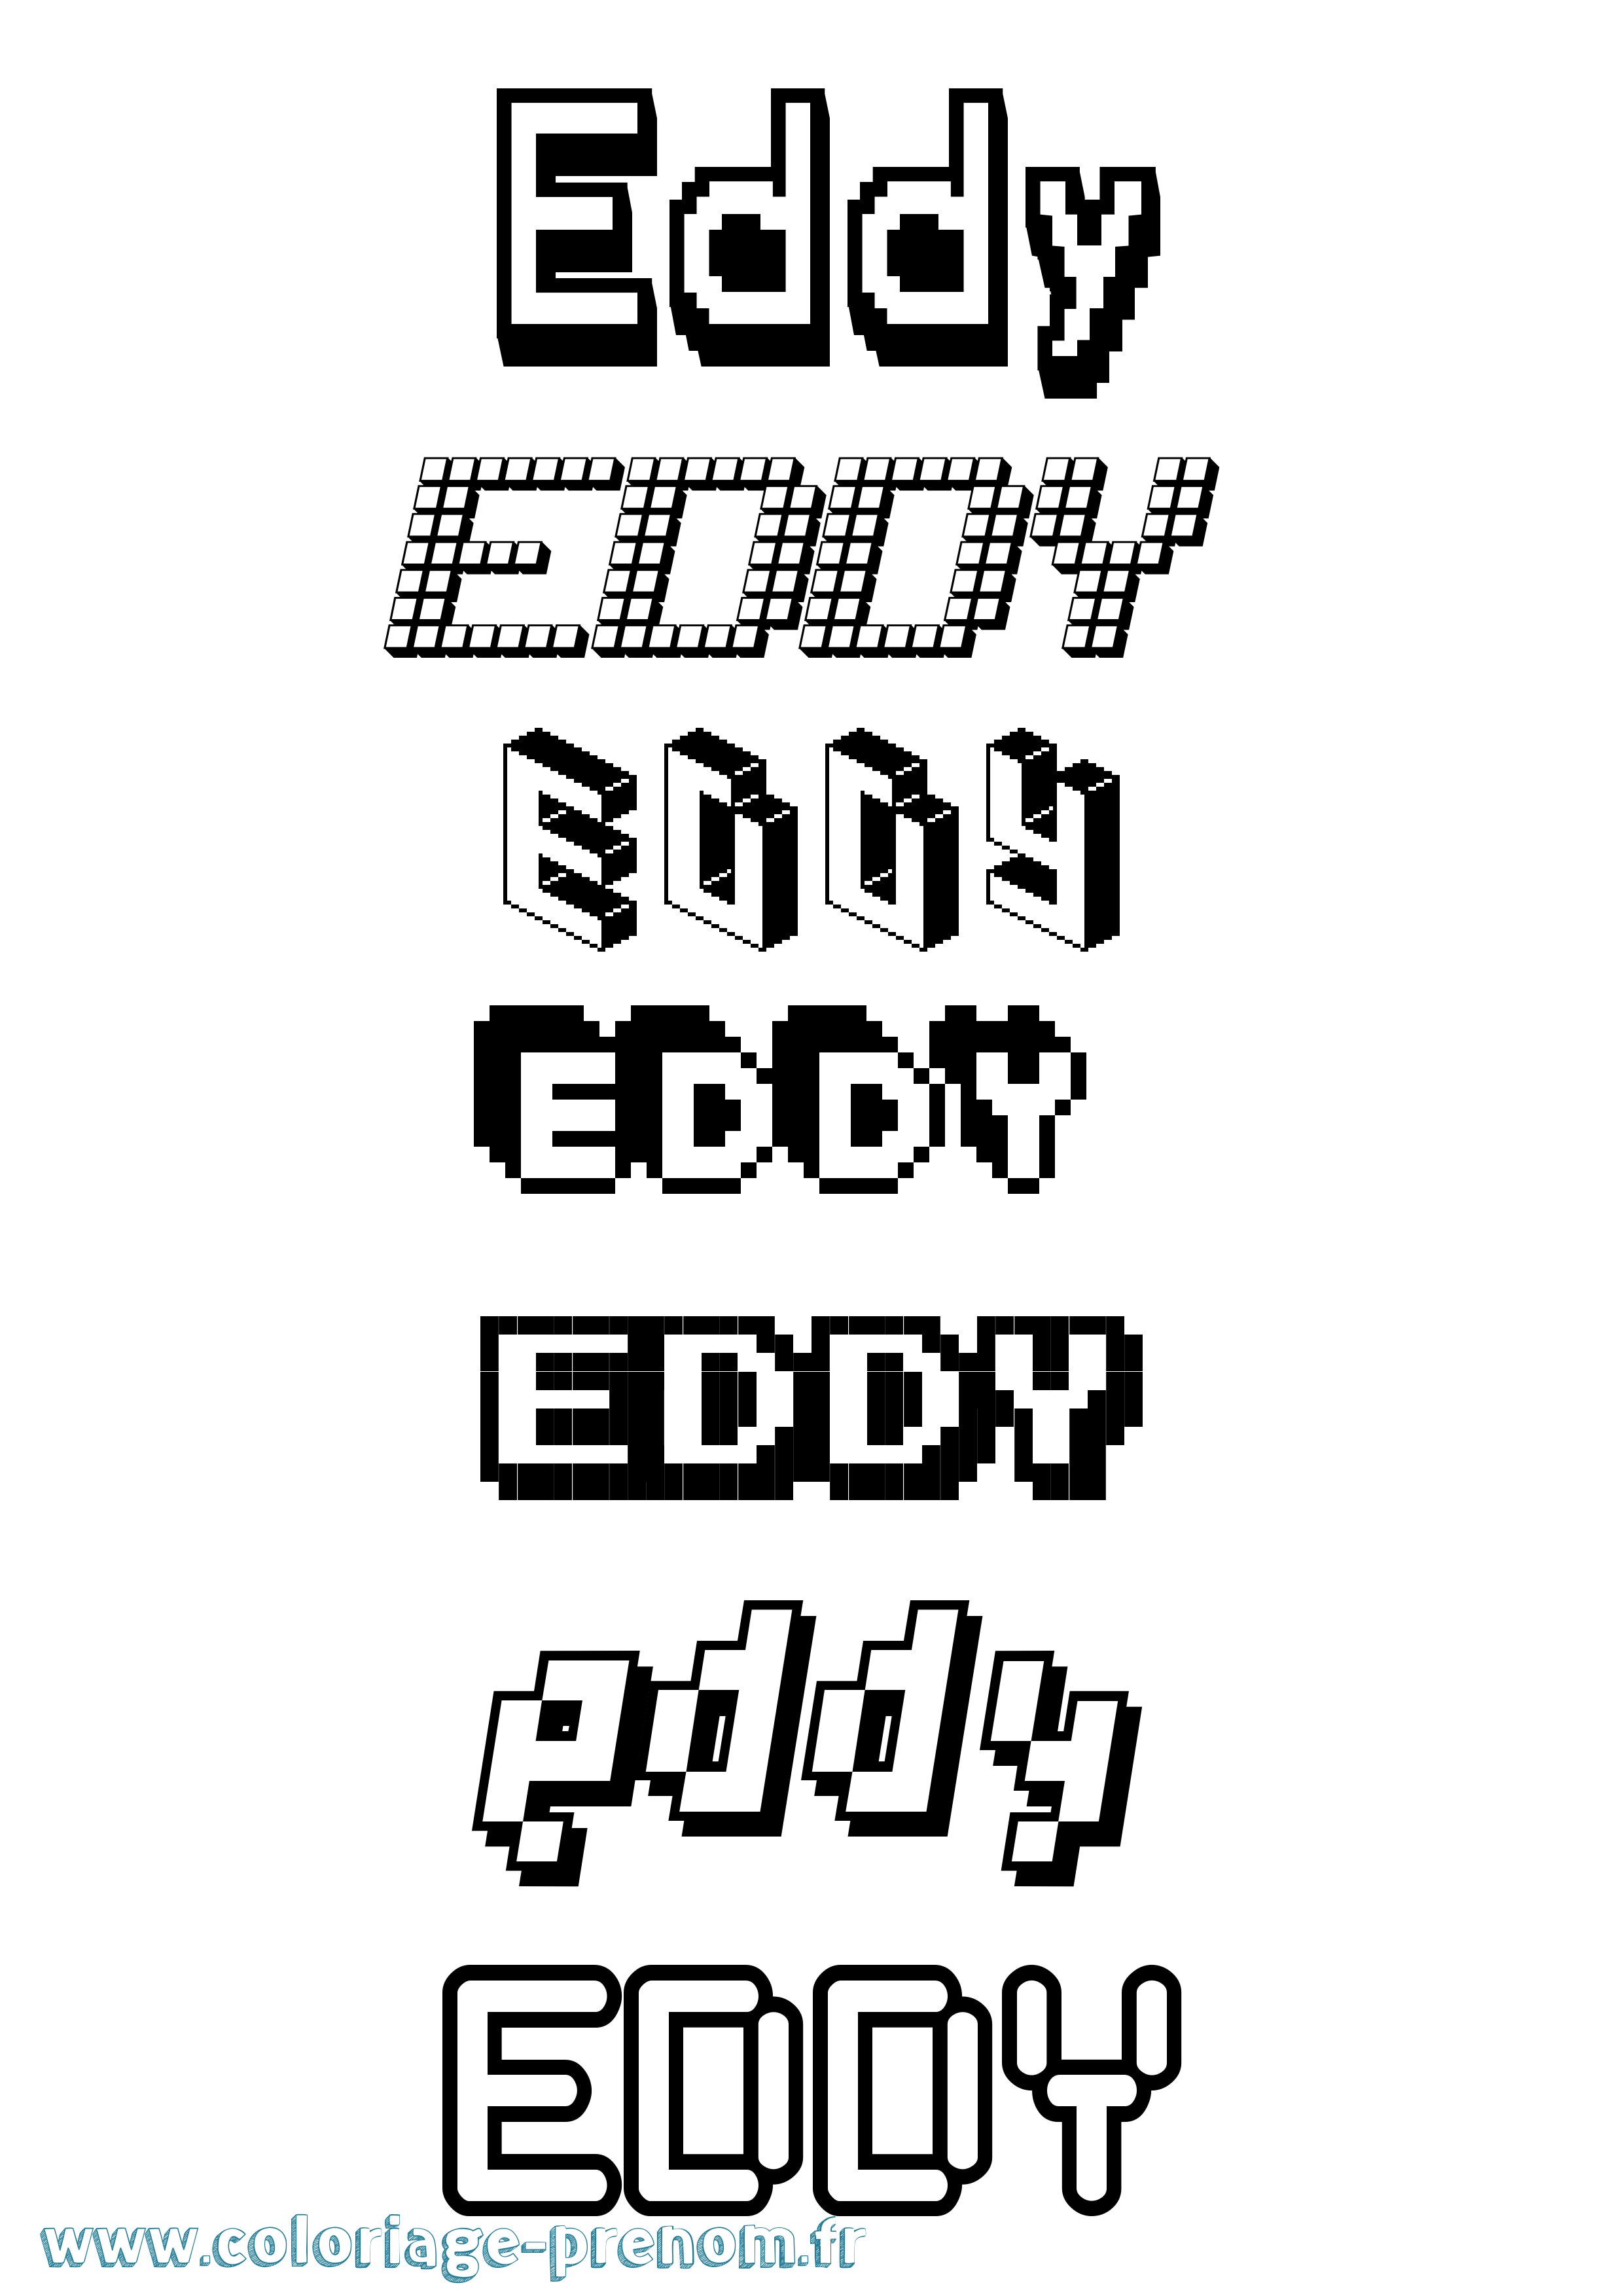 Coloriage prénom Eddy